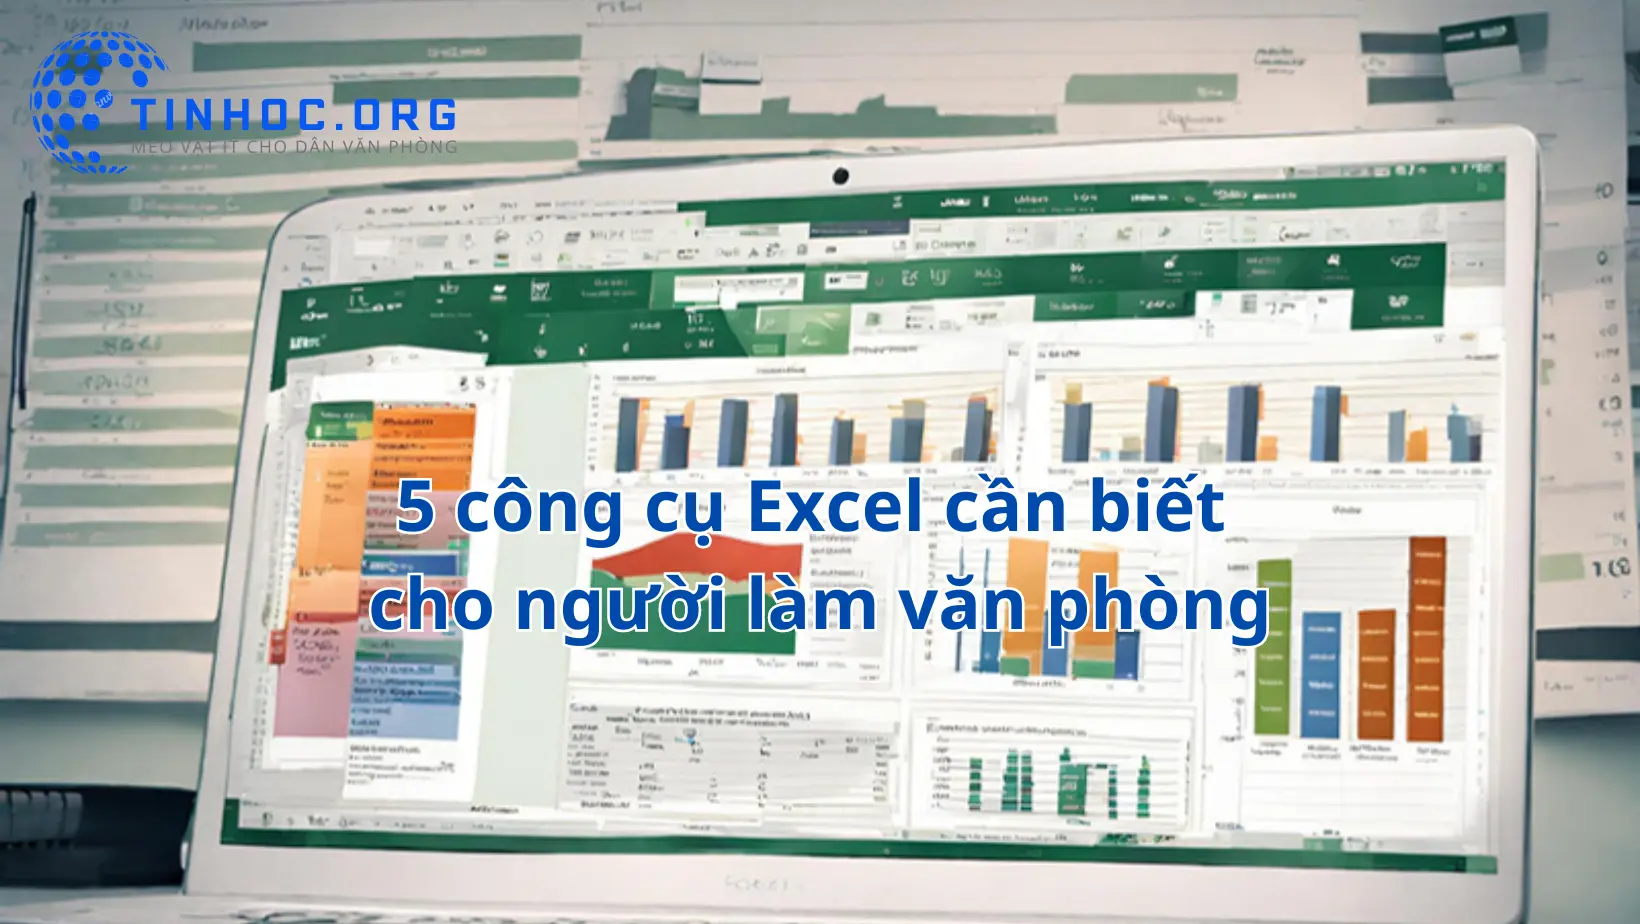 Excel là công cụ đắc lực cho người làm văn phòng. Tìm hiểu 5 công cụ Excel cần biết để quản lý dữ liệu, tính toán và trình bày thông tin một cách hiệu quả.